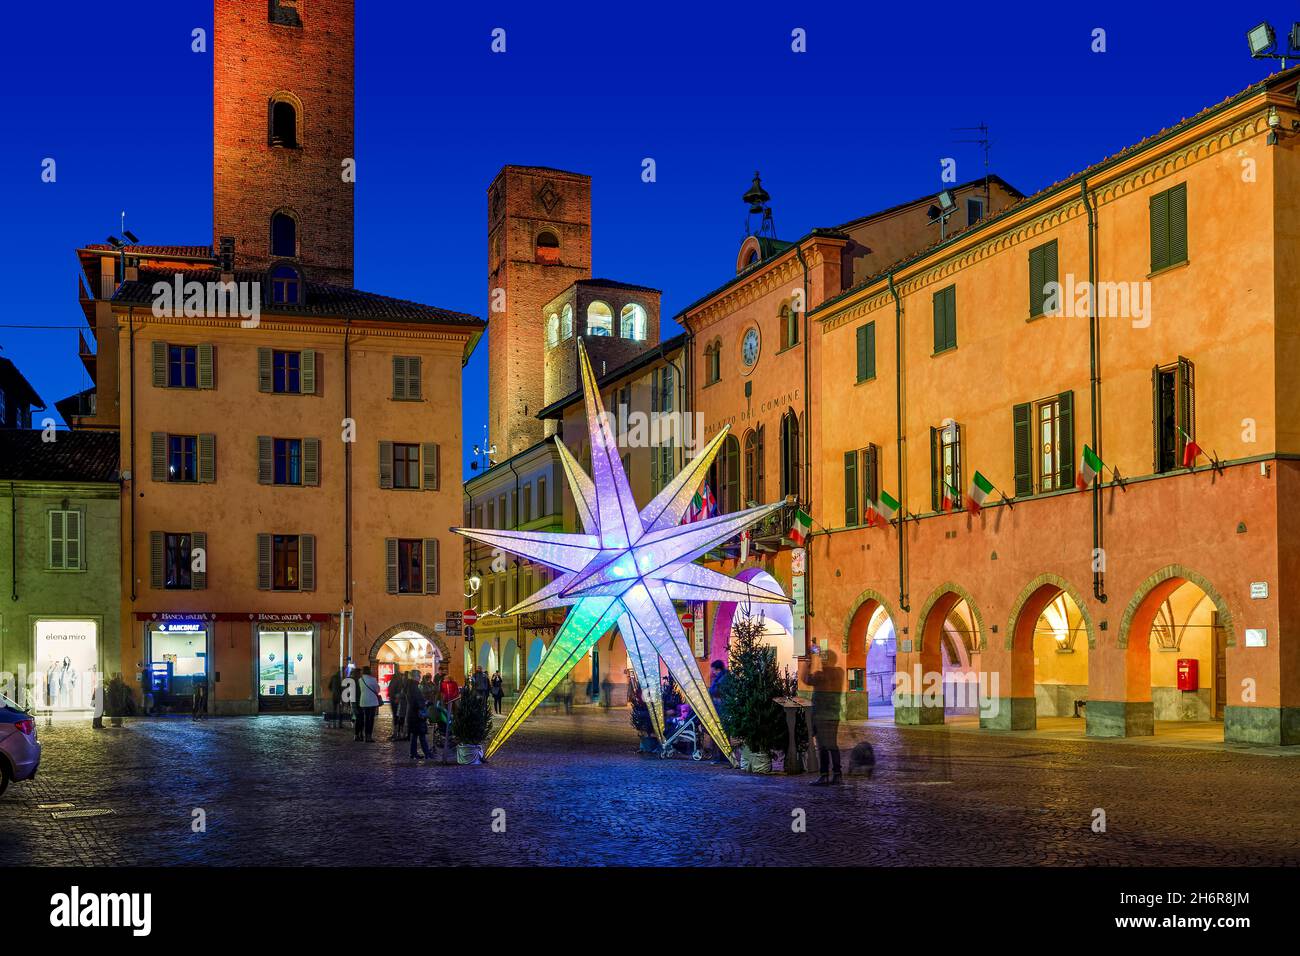 Installazione illuminata a forma di stella sulla piazza centrale tra edifici storici e torri medievali di Alba, Italia. Foto Stock